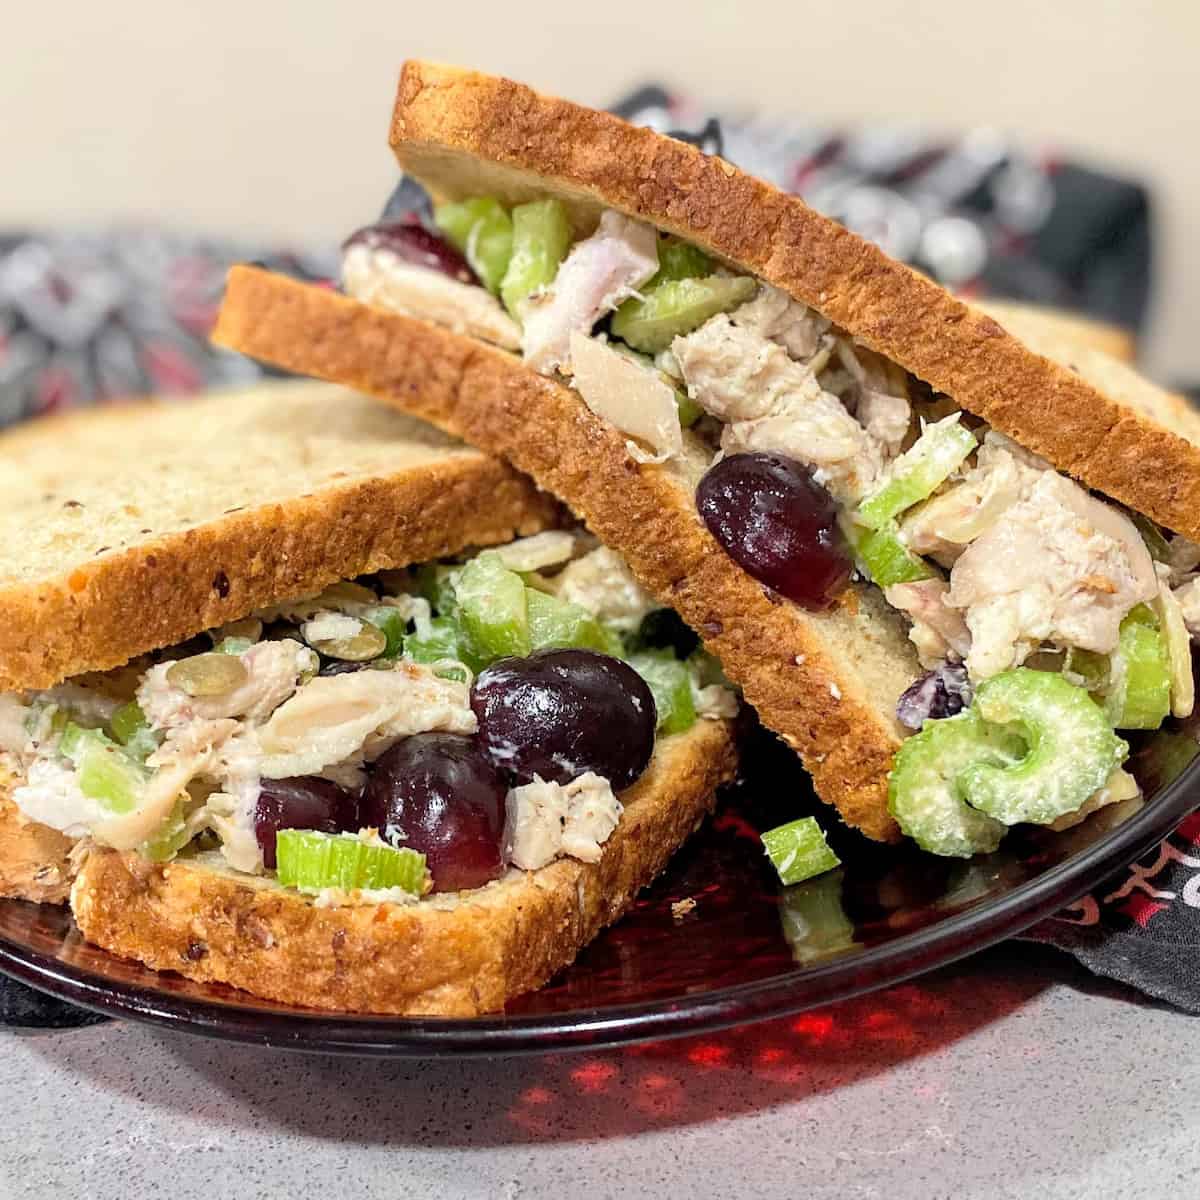 rotisserie chicken salad sandwich on wheat bread